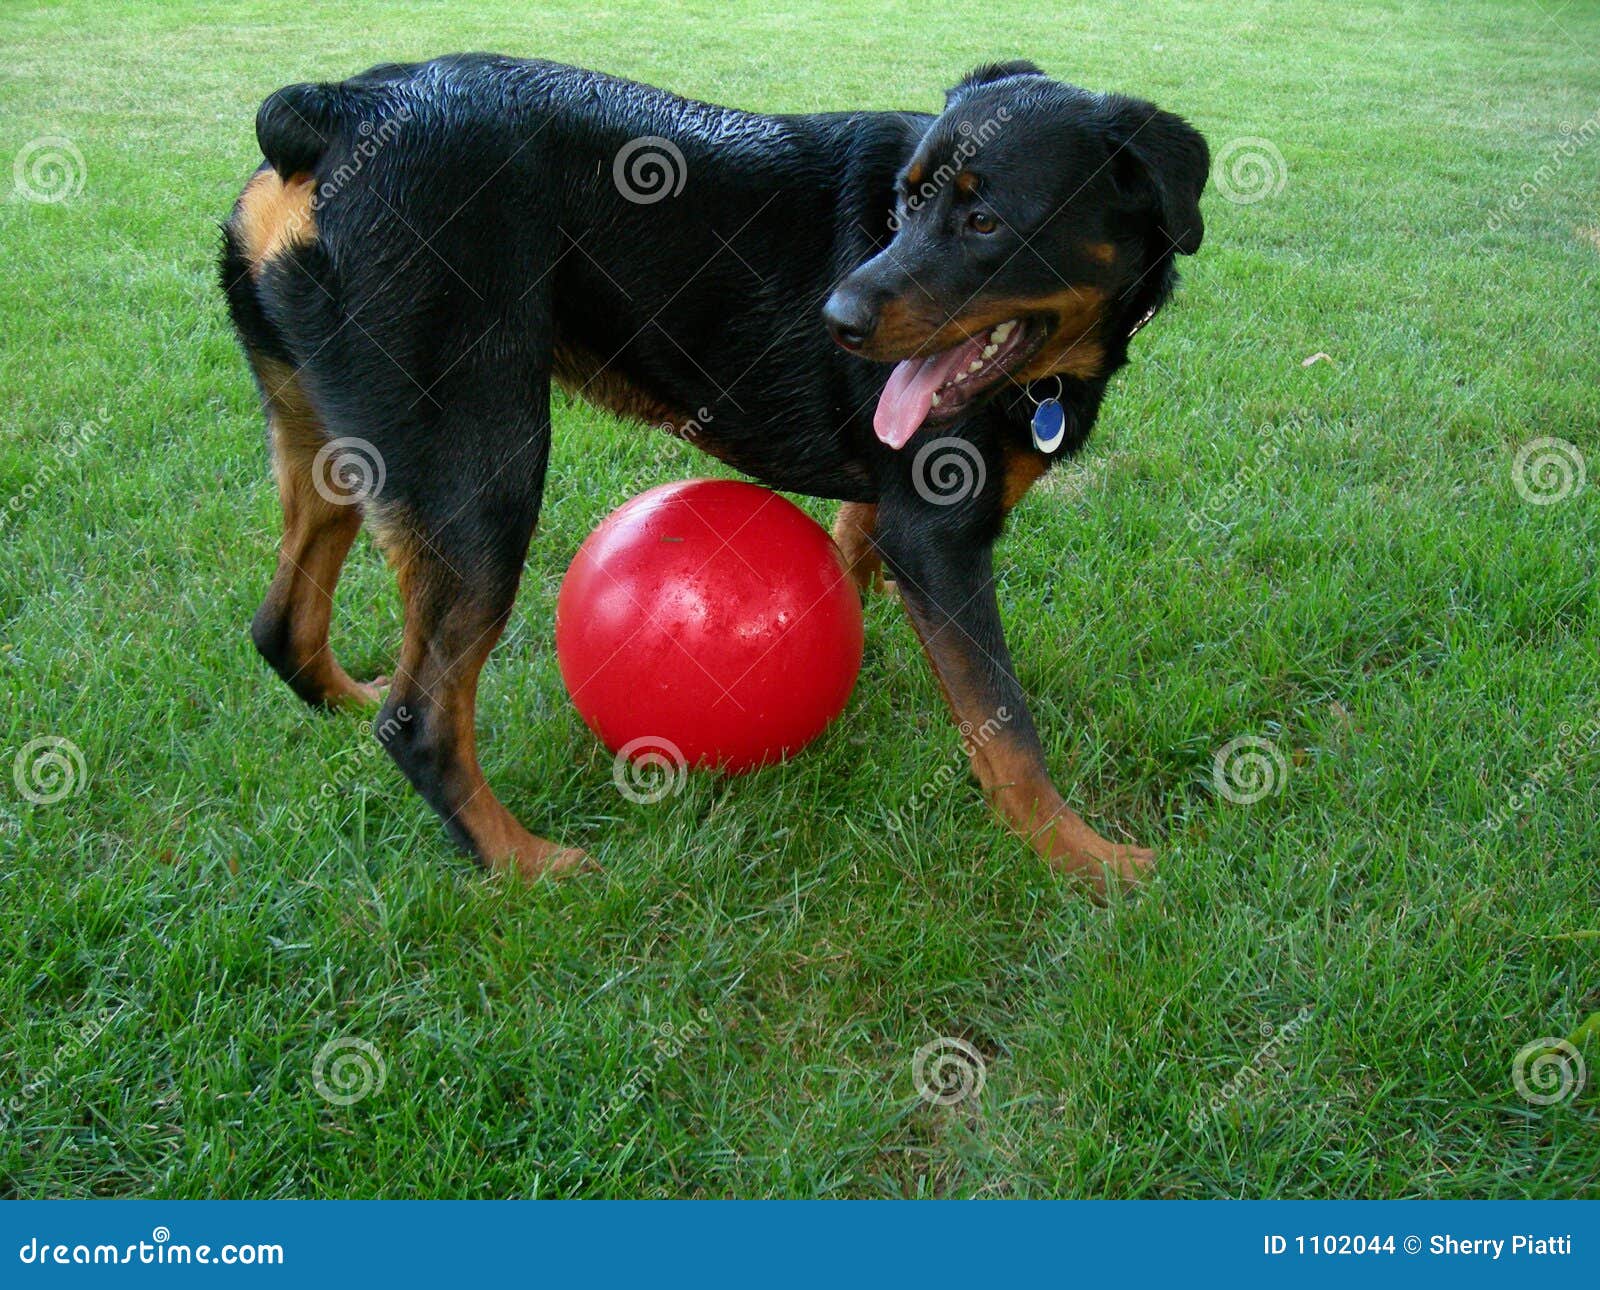 dog guarding over big ball